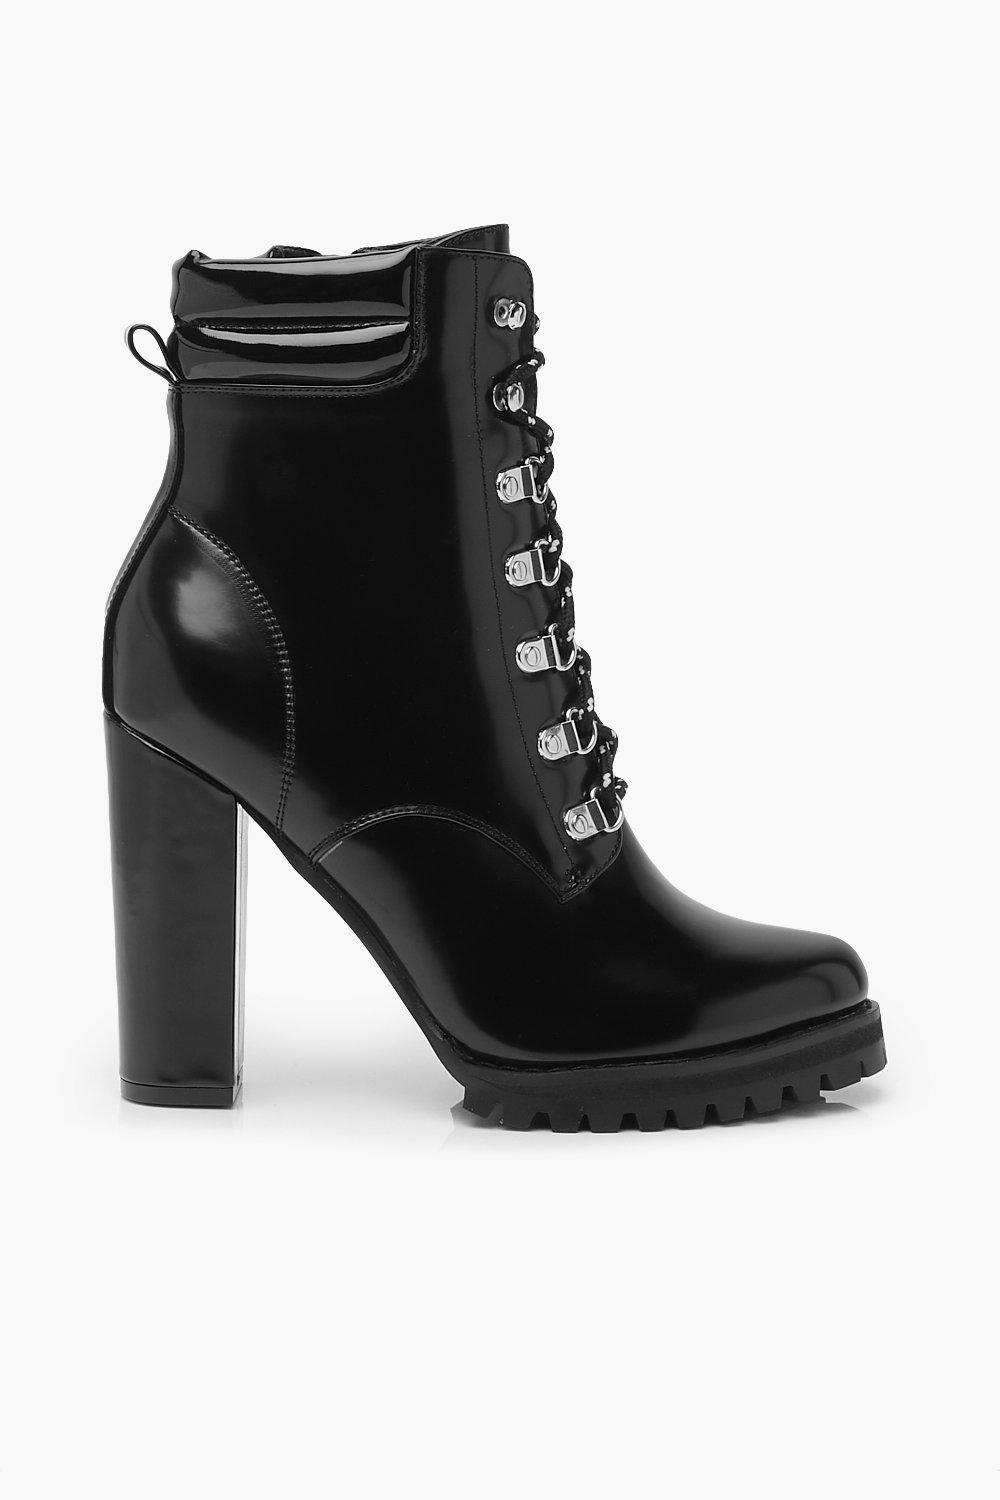 black heeled combat booties